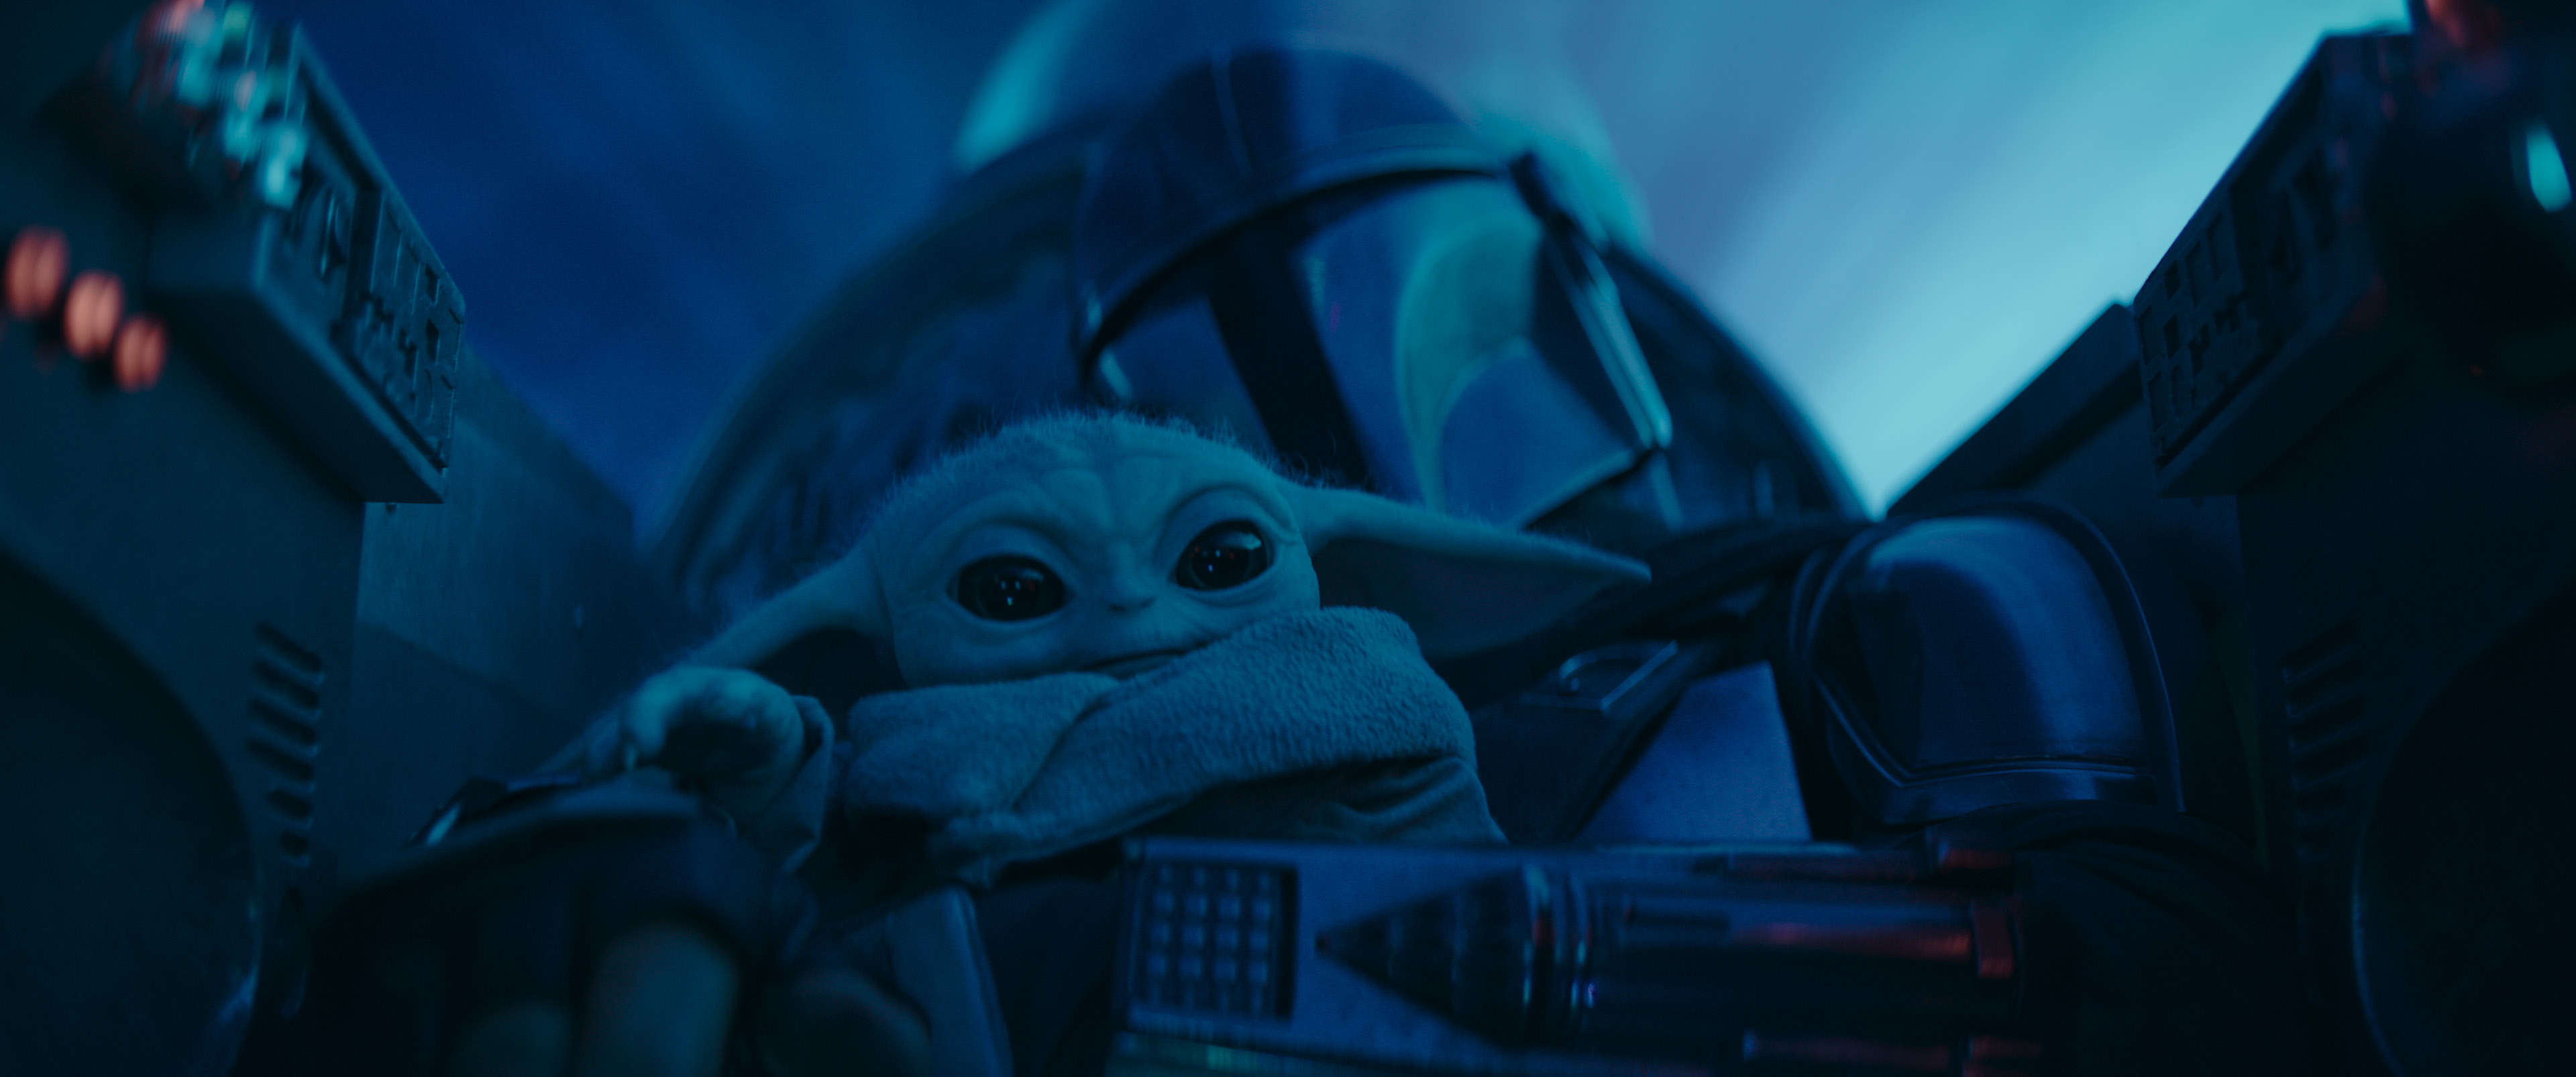 Mando con "Baby Yoda" a bordo della sua nave. Immagine della serie The Mandalorian su Disney+.